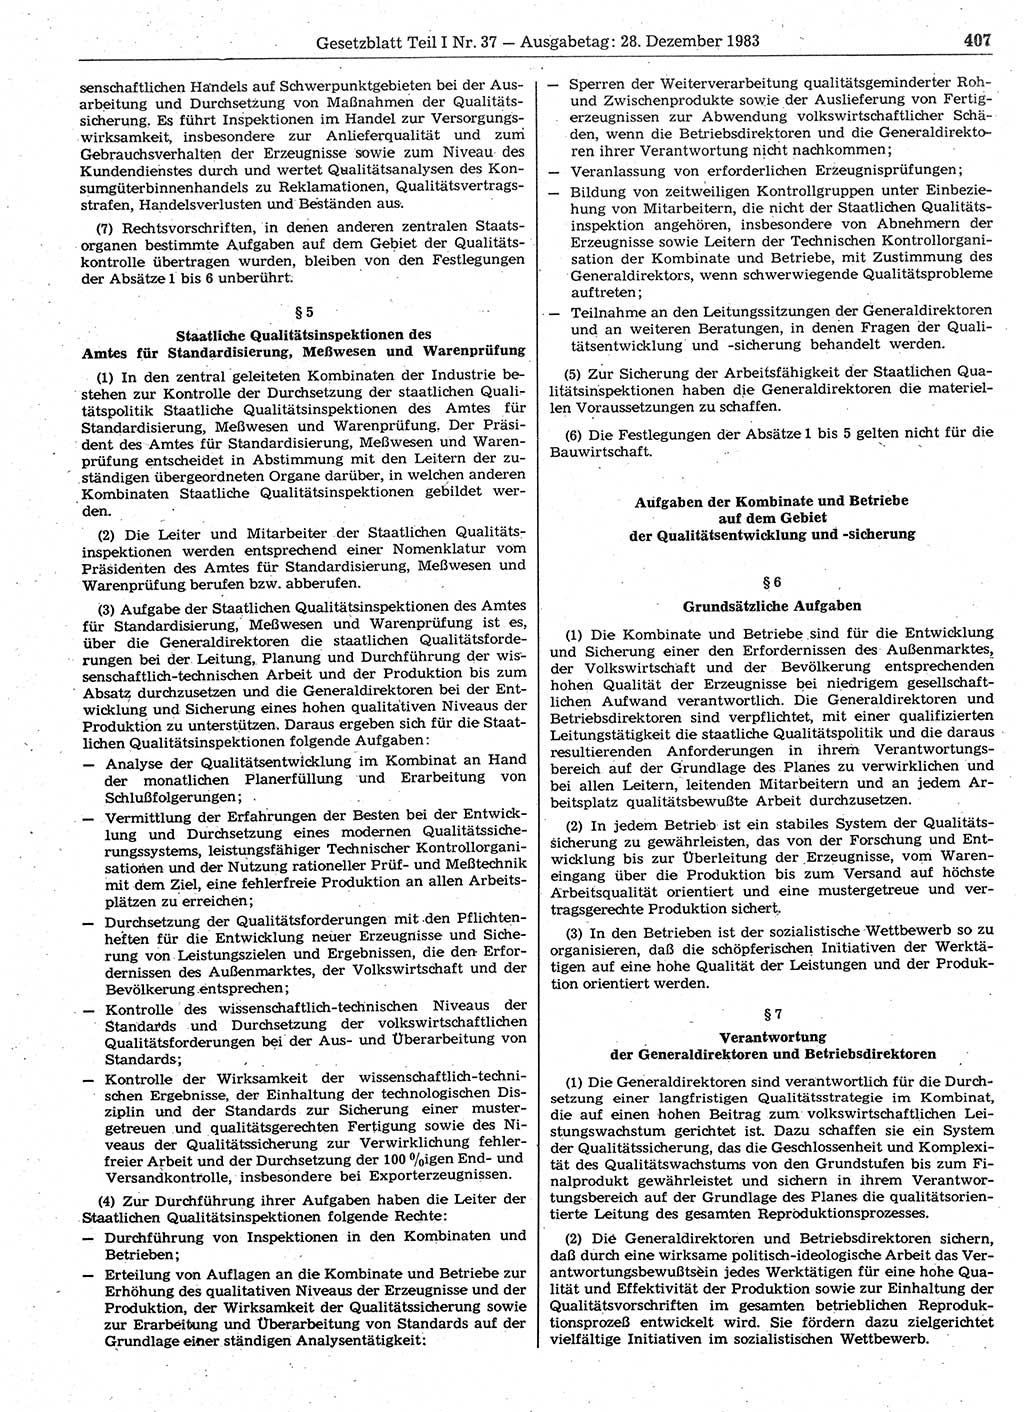 Gesetzblatt (GBl.) der Deutschen Demokratischen Republik (DDR) Teil Ⅰ 1983, Seite 407 (GBl. DDR Ⅰ 1983, S. 407)